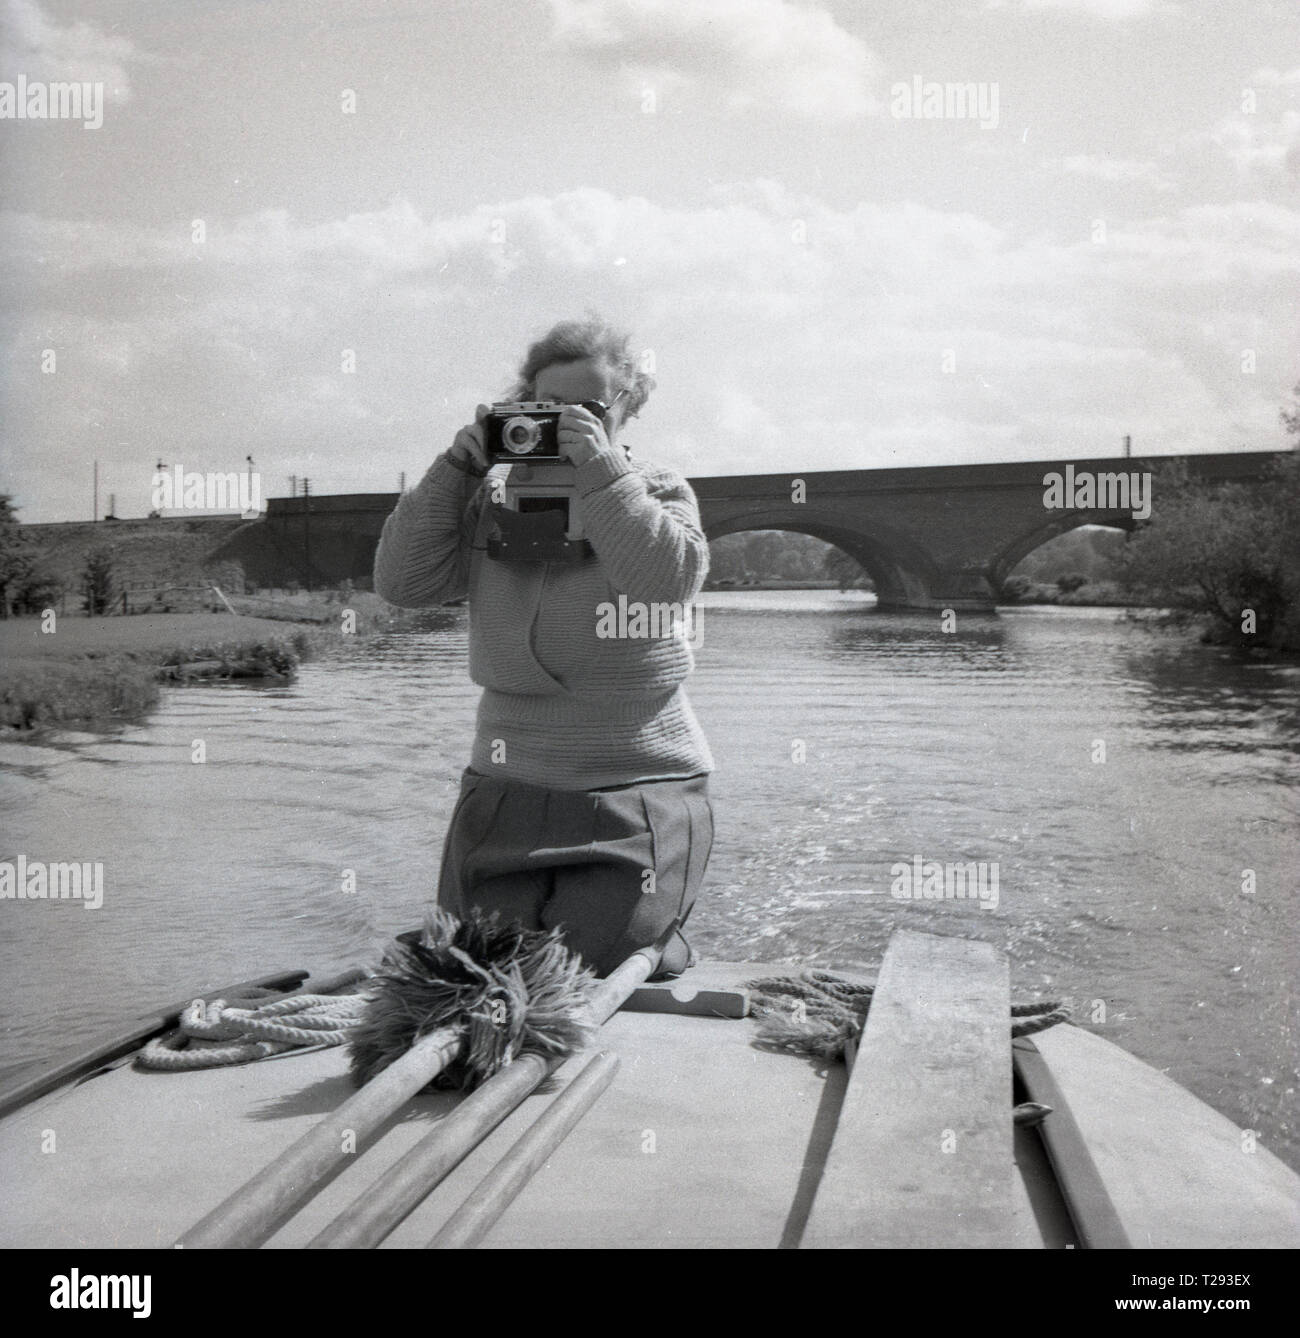 Années 1950, dame agenouillée sur le dos d'un yacht à voile ou bateau à moteur avec un appareil photo prendre une photo, Oxford, Angleterre, Royaume-Uni. Banque D'Images